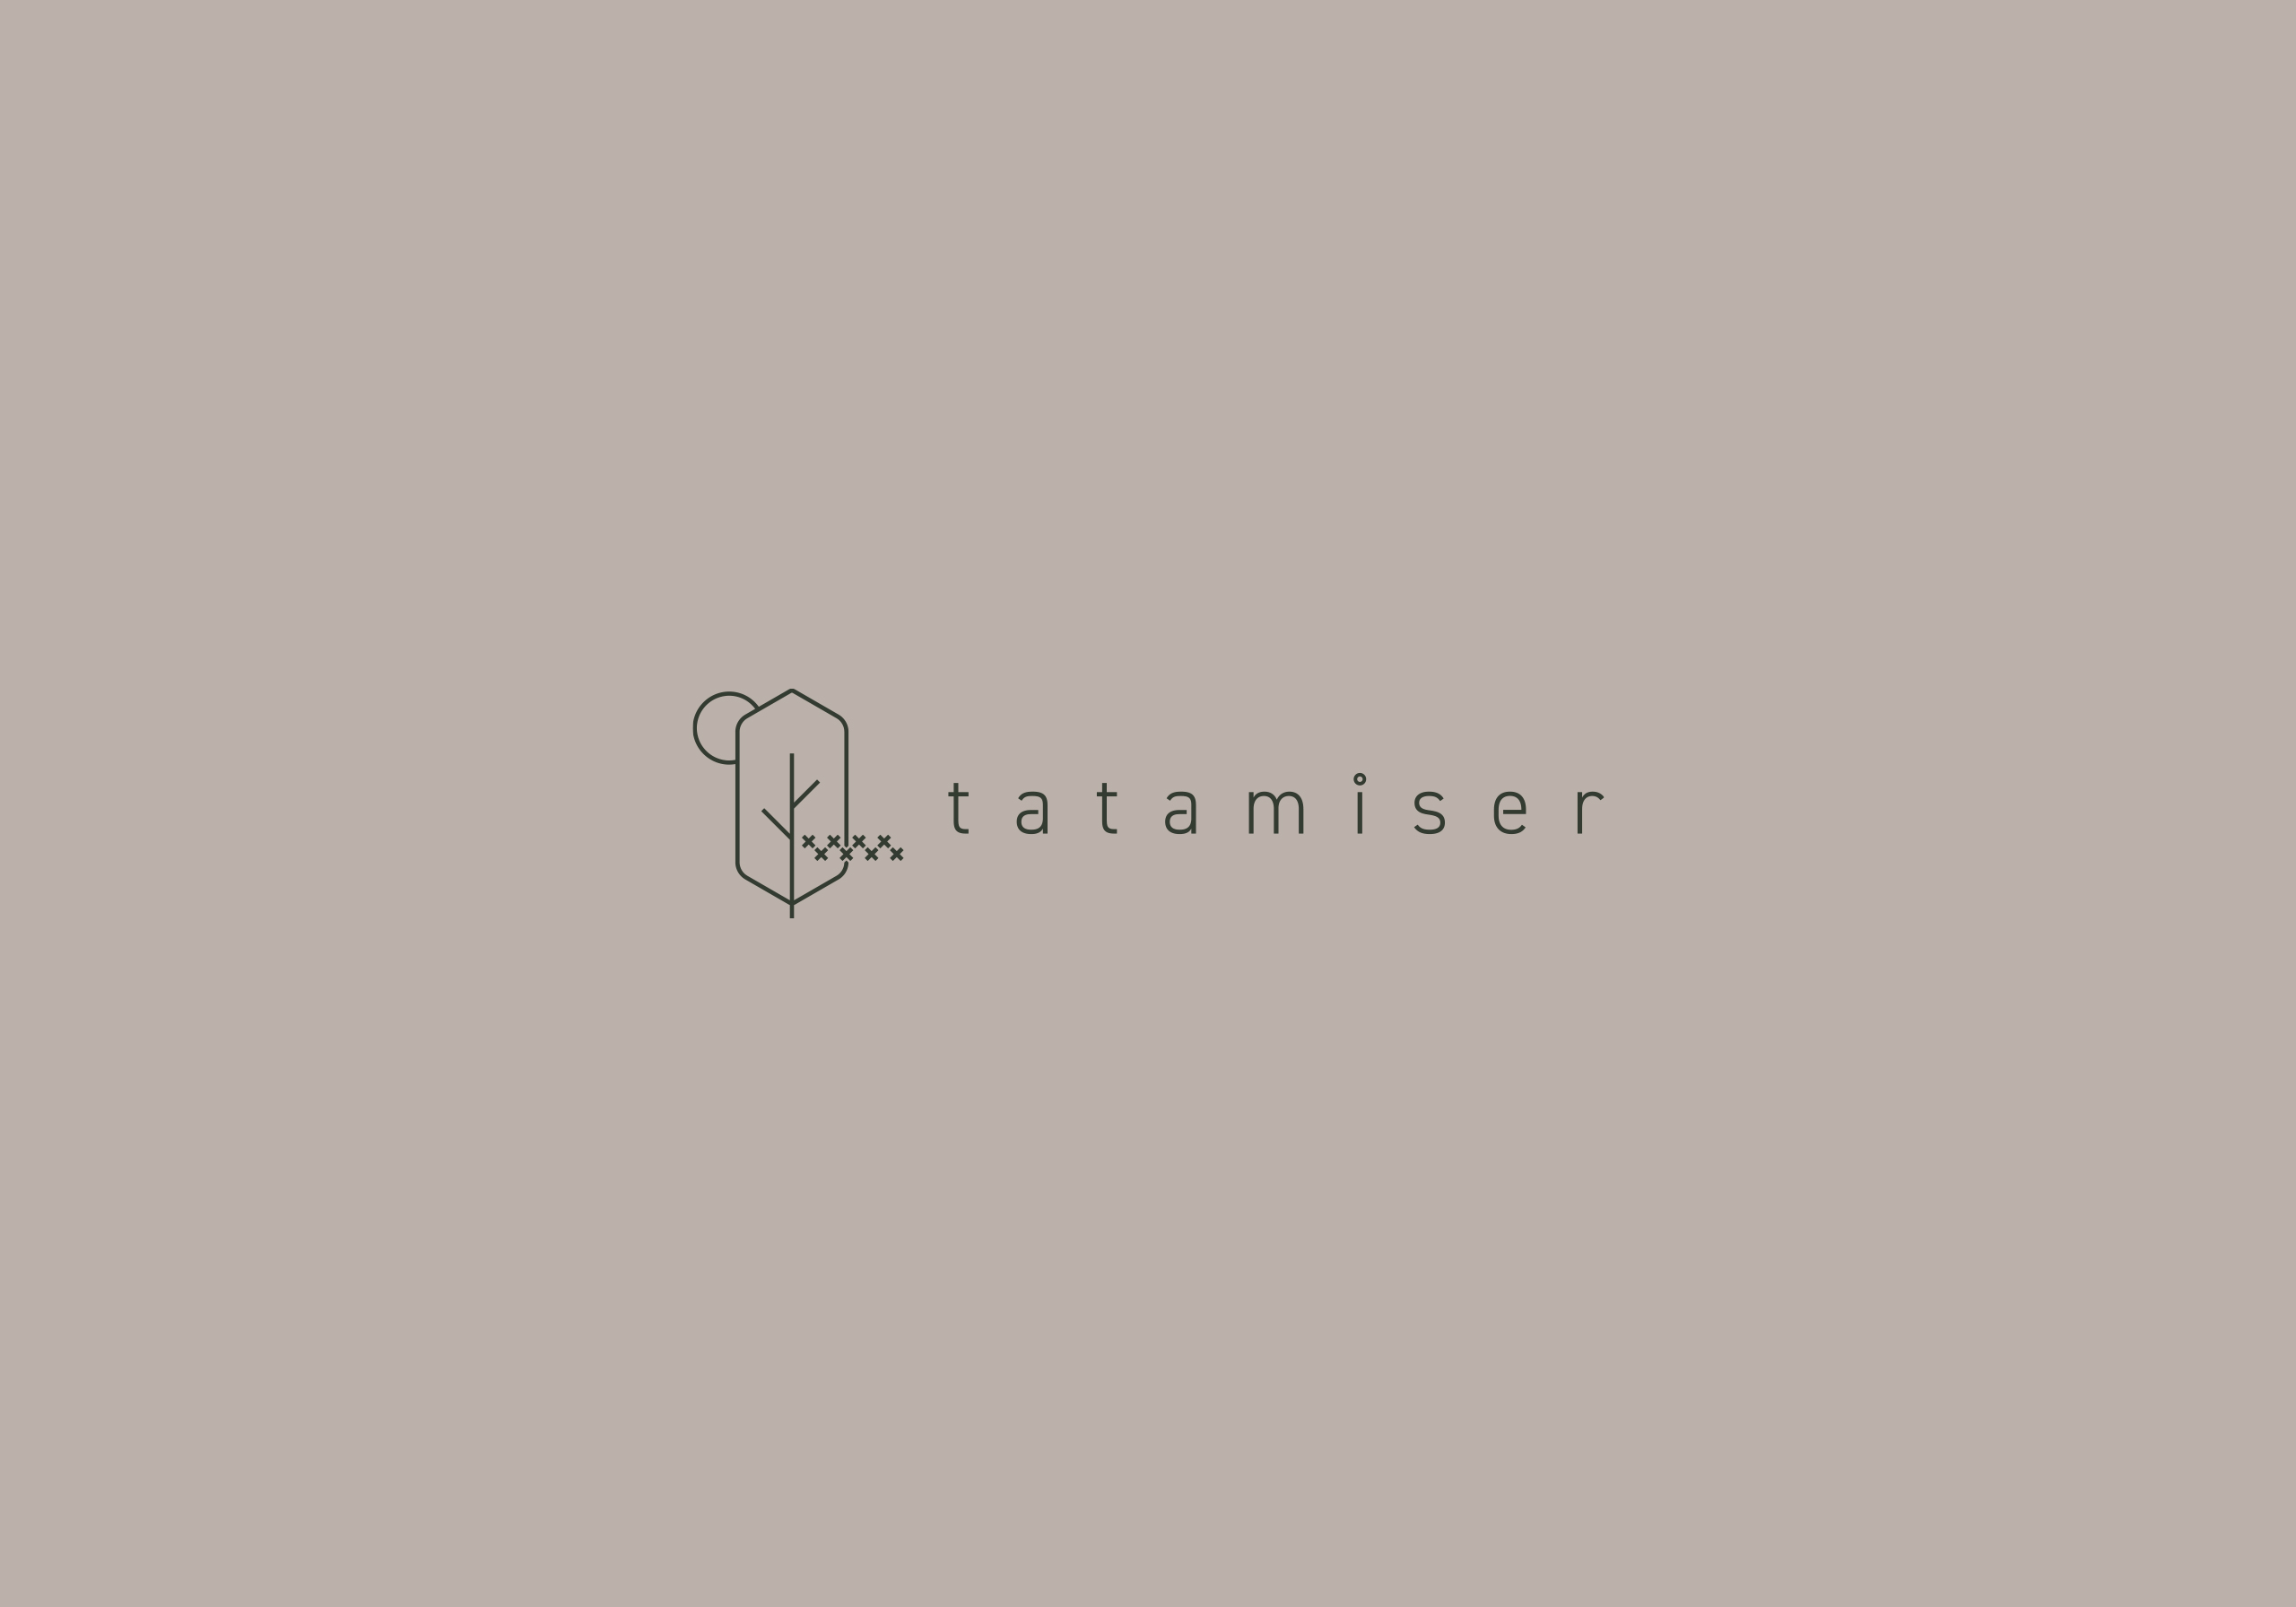 tatamiser_logo